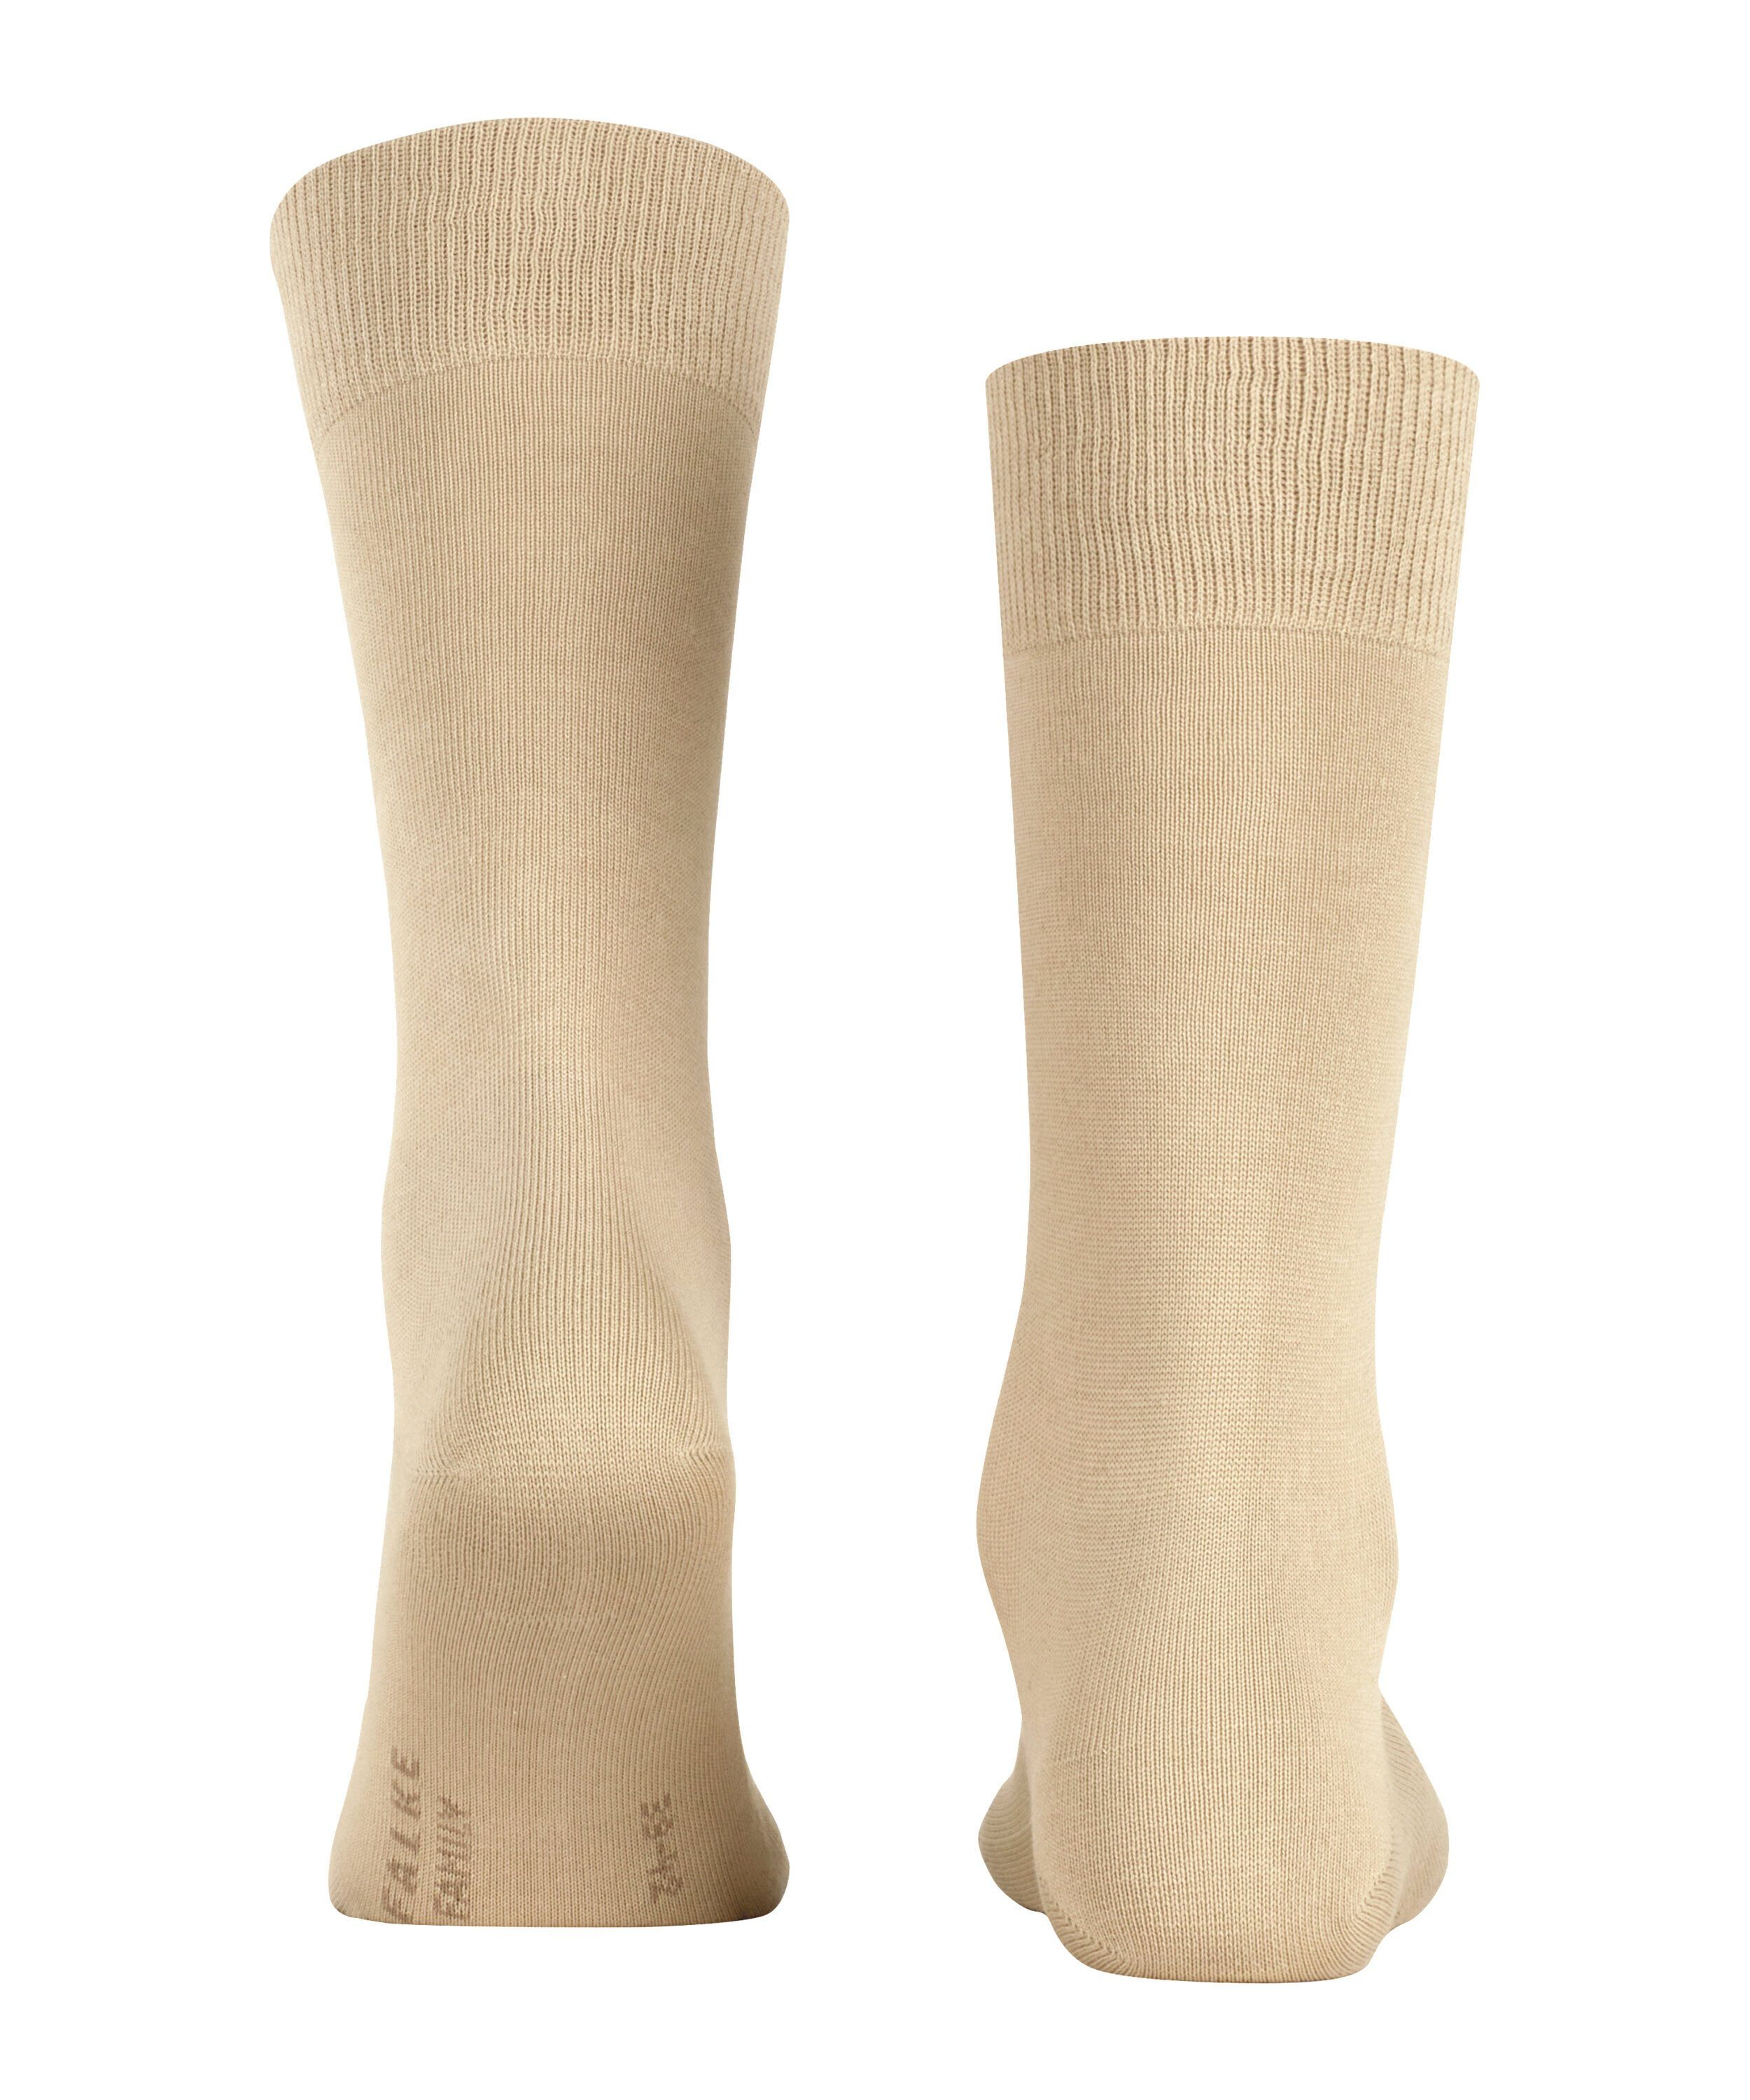 Family (1-Paar) FALKE Socken sand (4320)